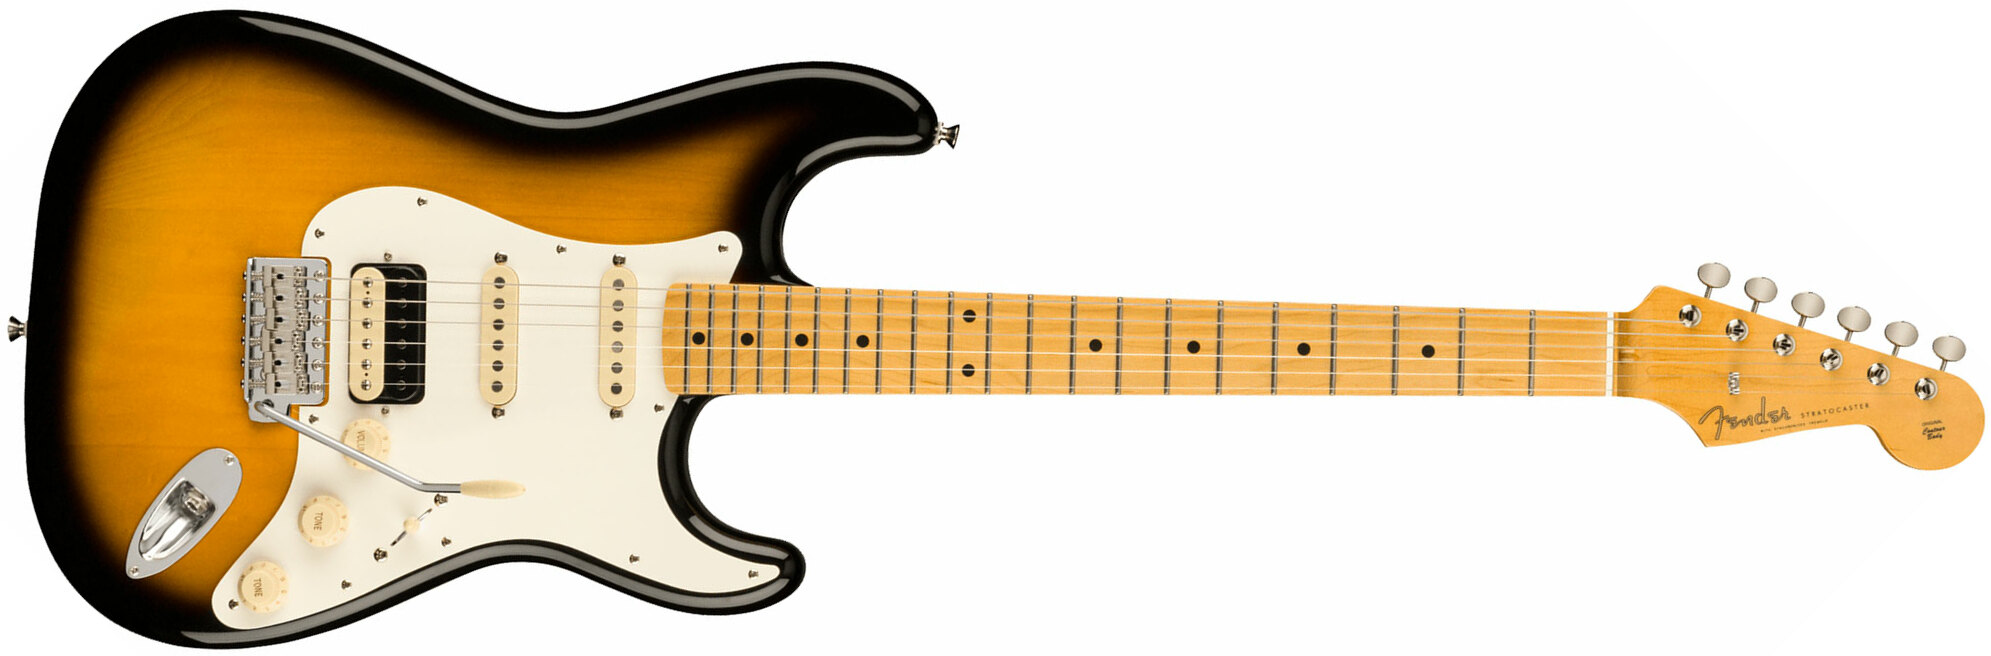 Fender Strat Jv Modified '50s Jap Hss Trem Mn - 2-color Sunburst - Guitare Électrique Forme Str - Main picture